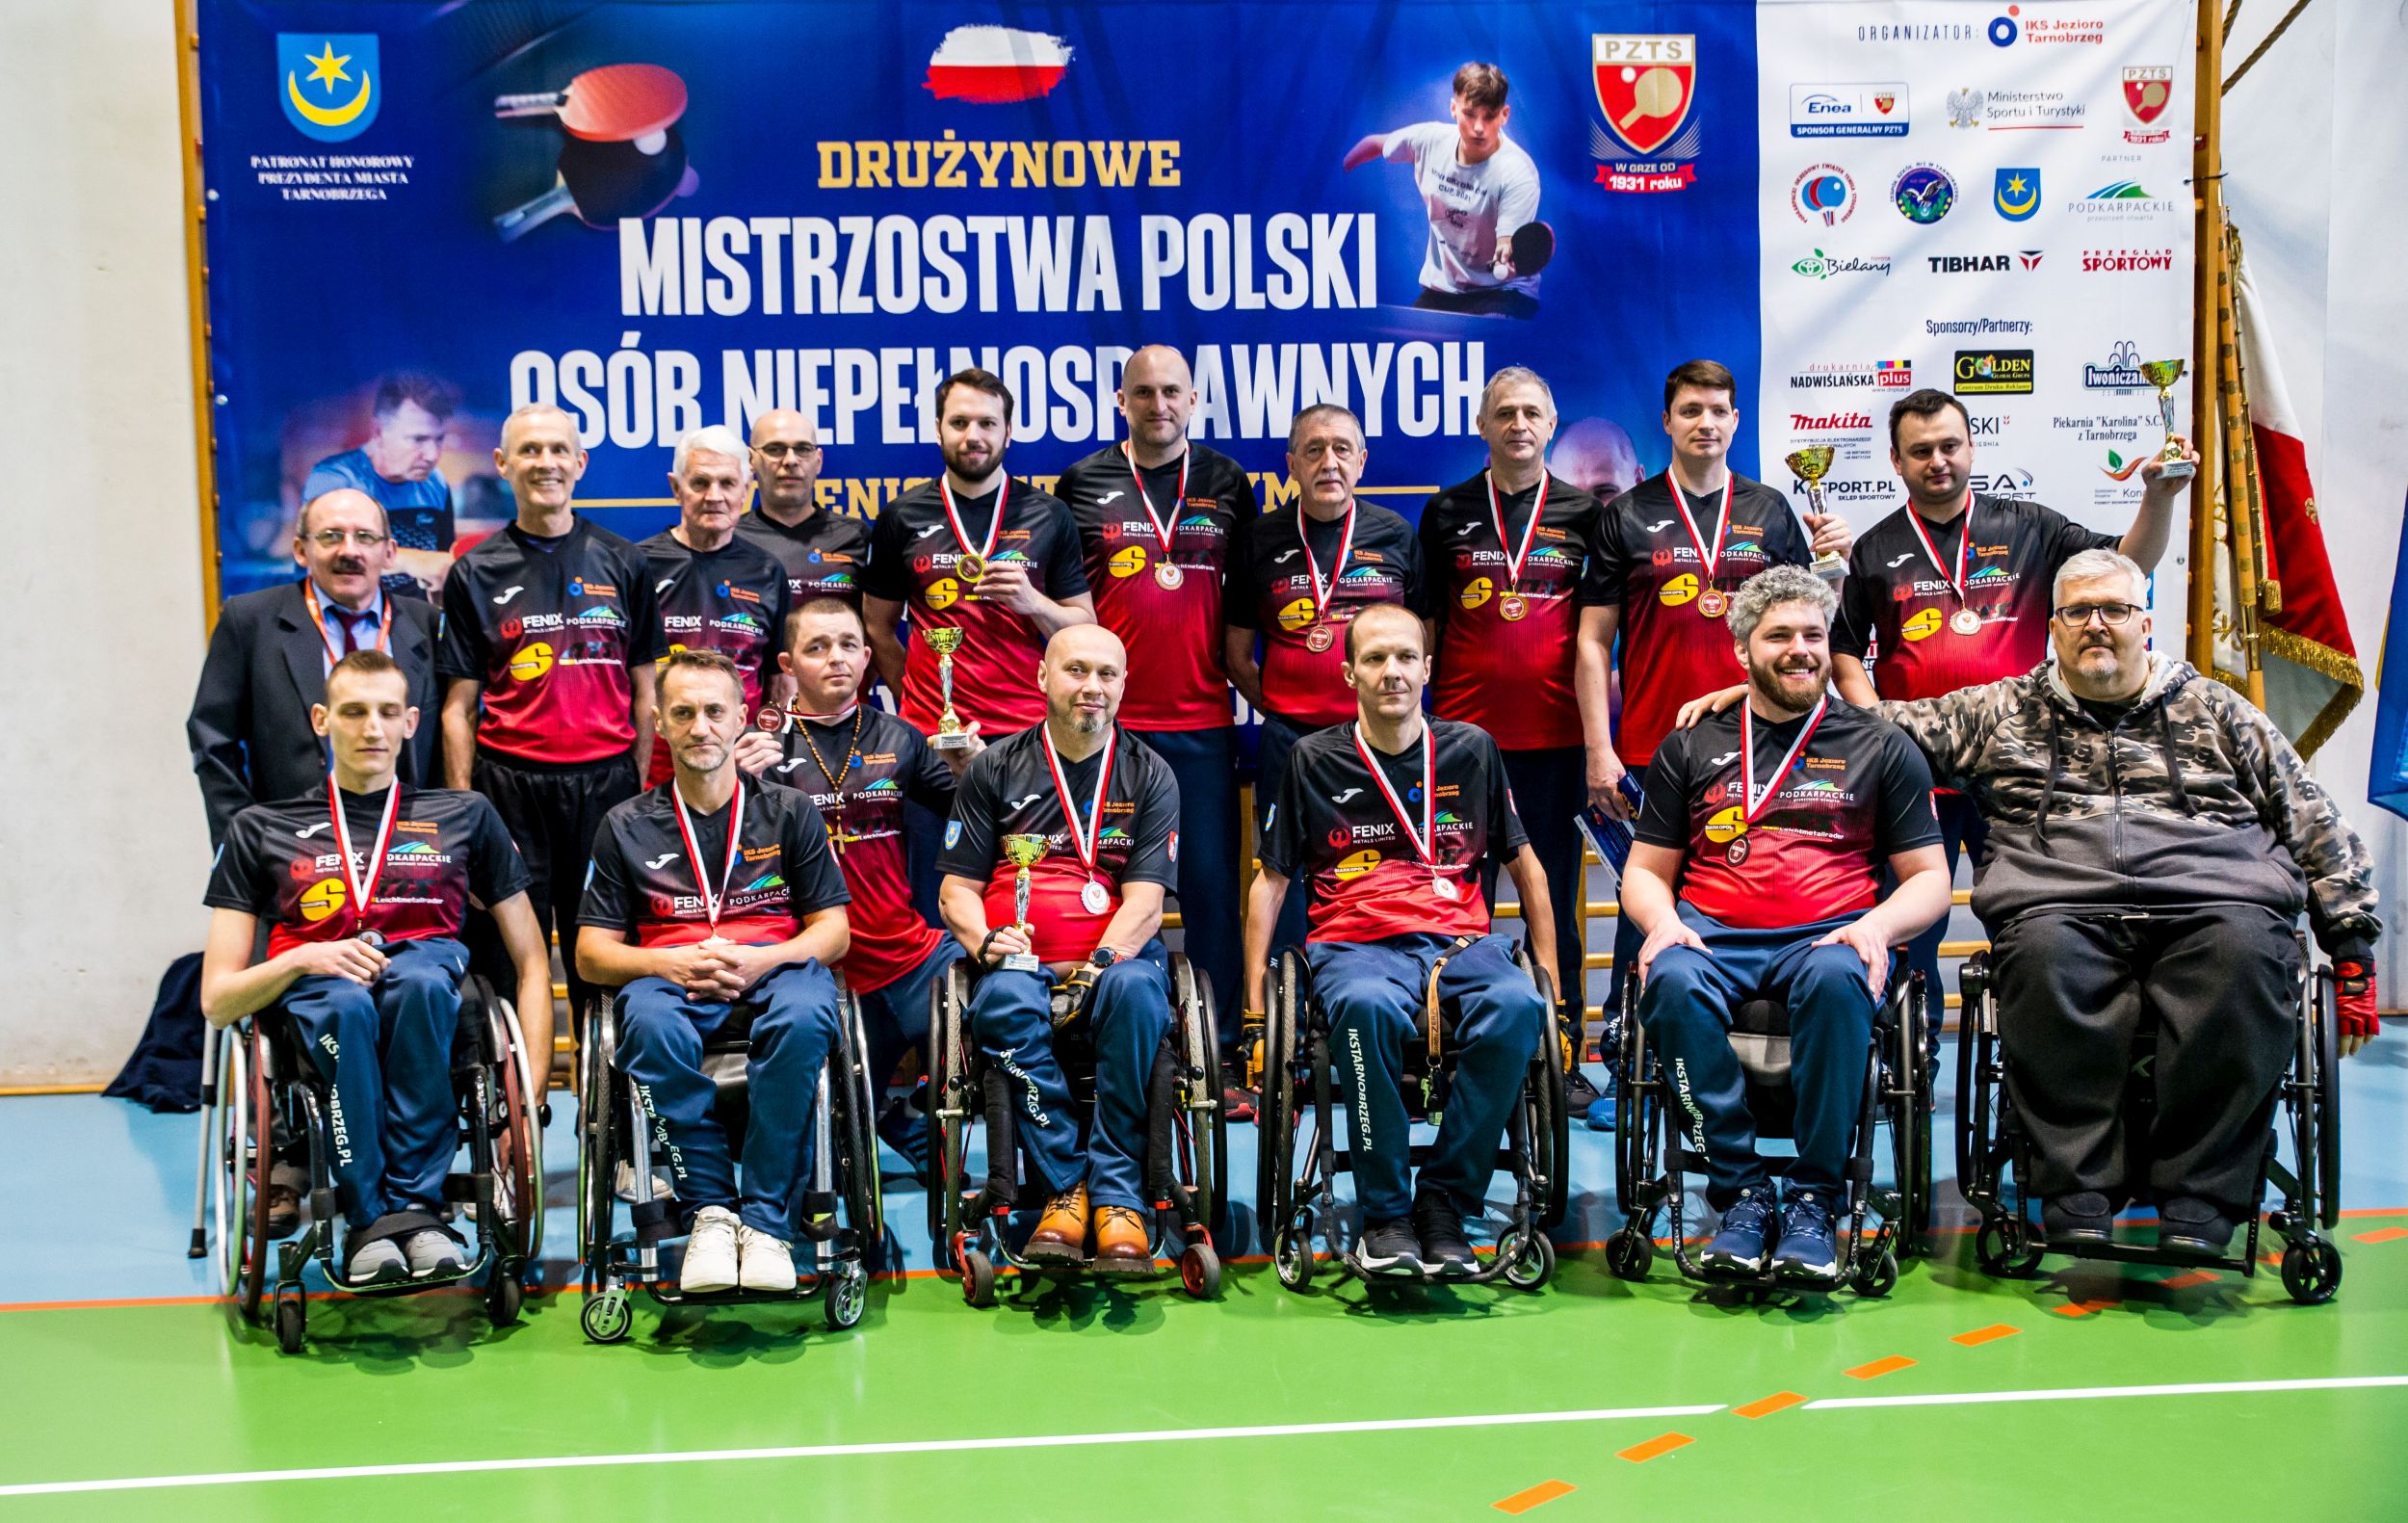 Sukces, 5 drużyn IKS JEZIORO Tarnobrzeg na podium w Drużynowych Mistrzostwach Polski w tenisie stołowym w Tarnobrzegu!